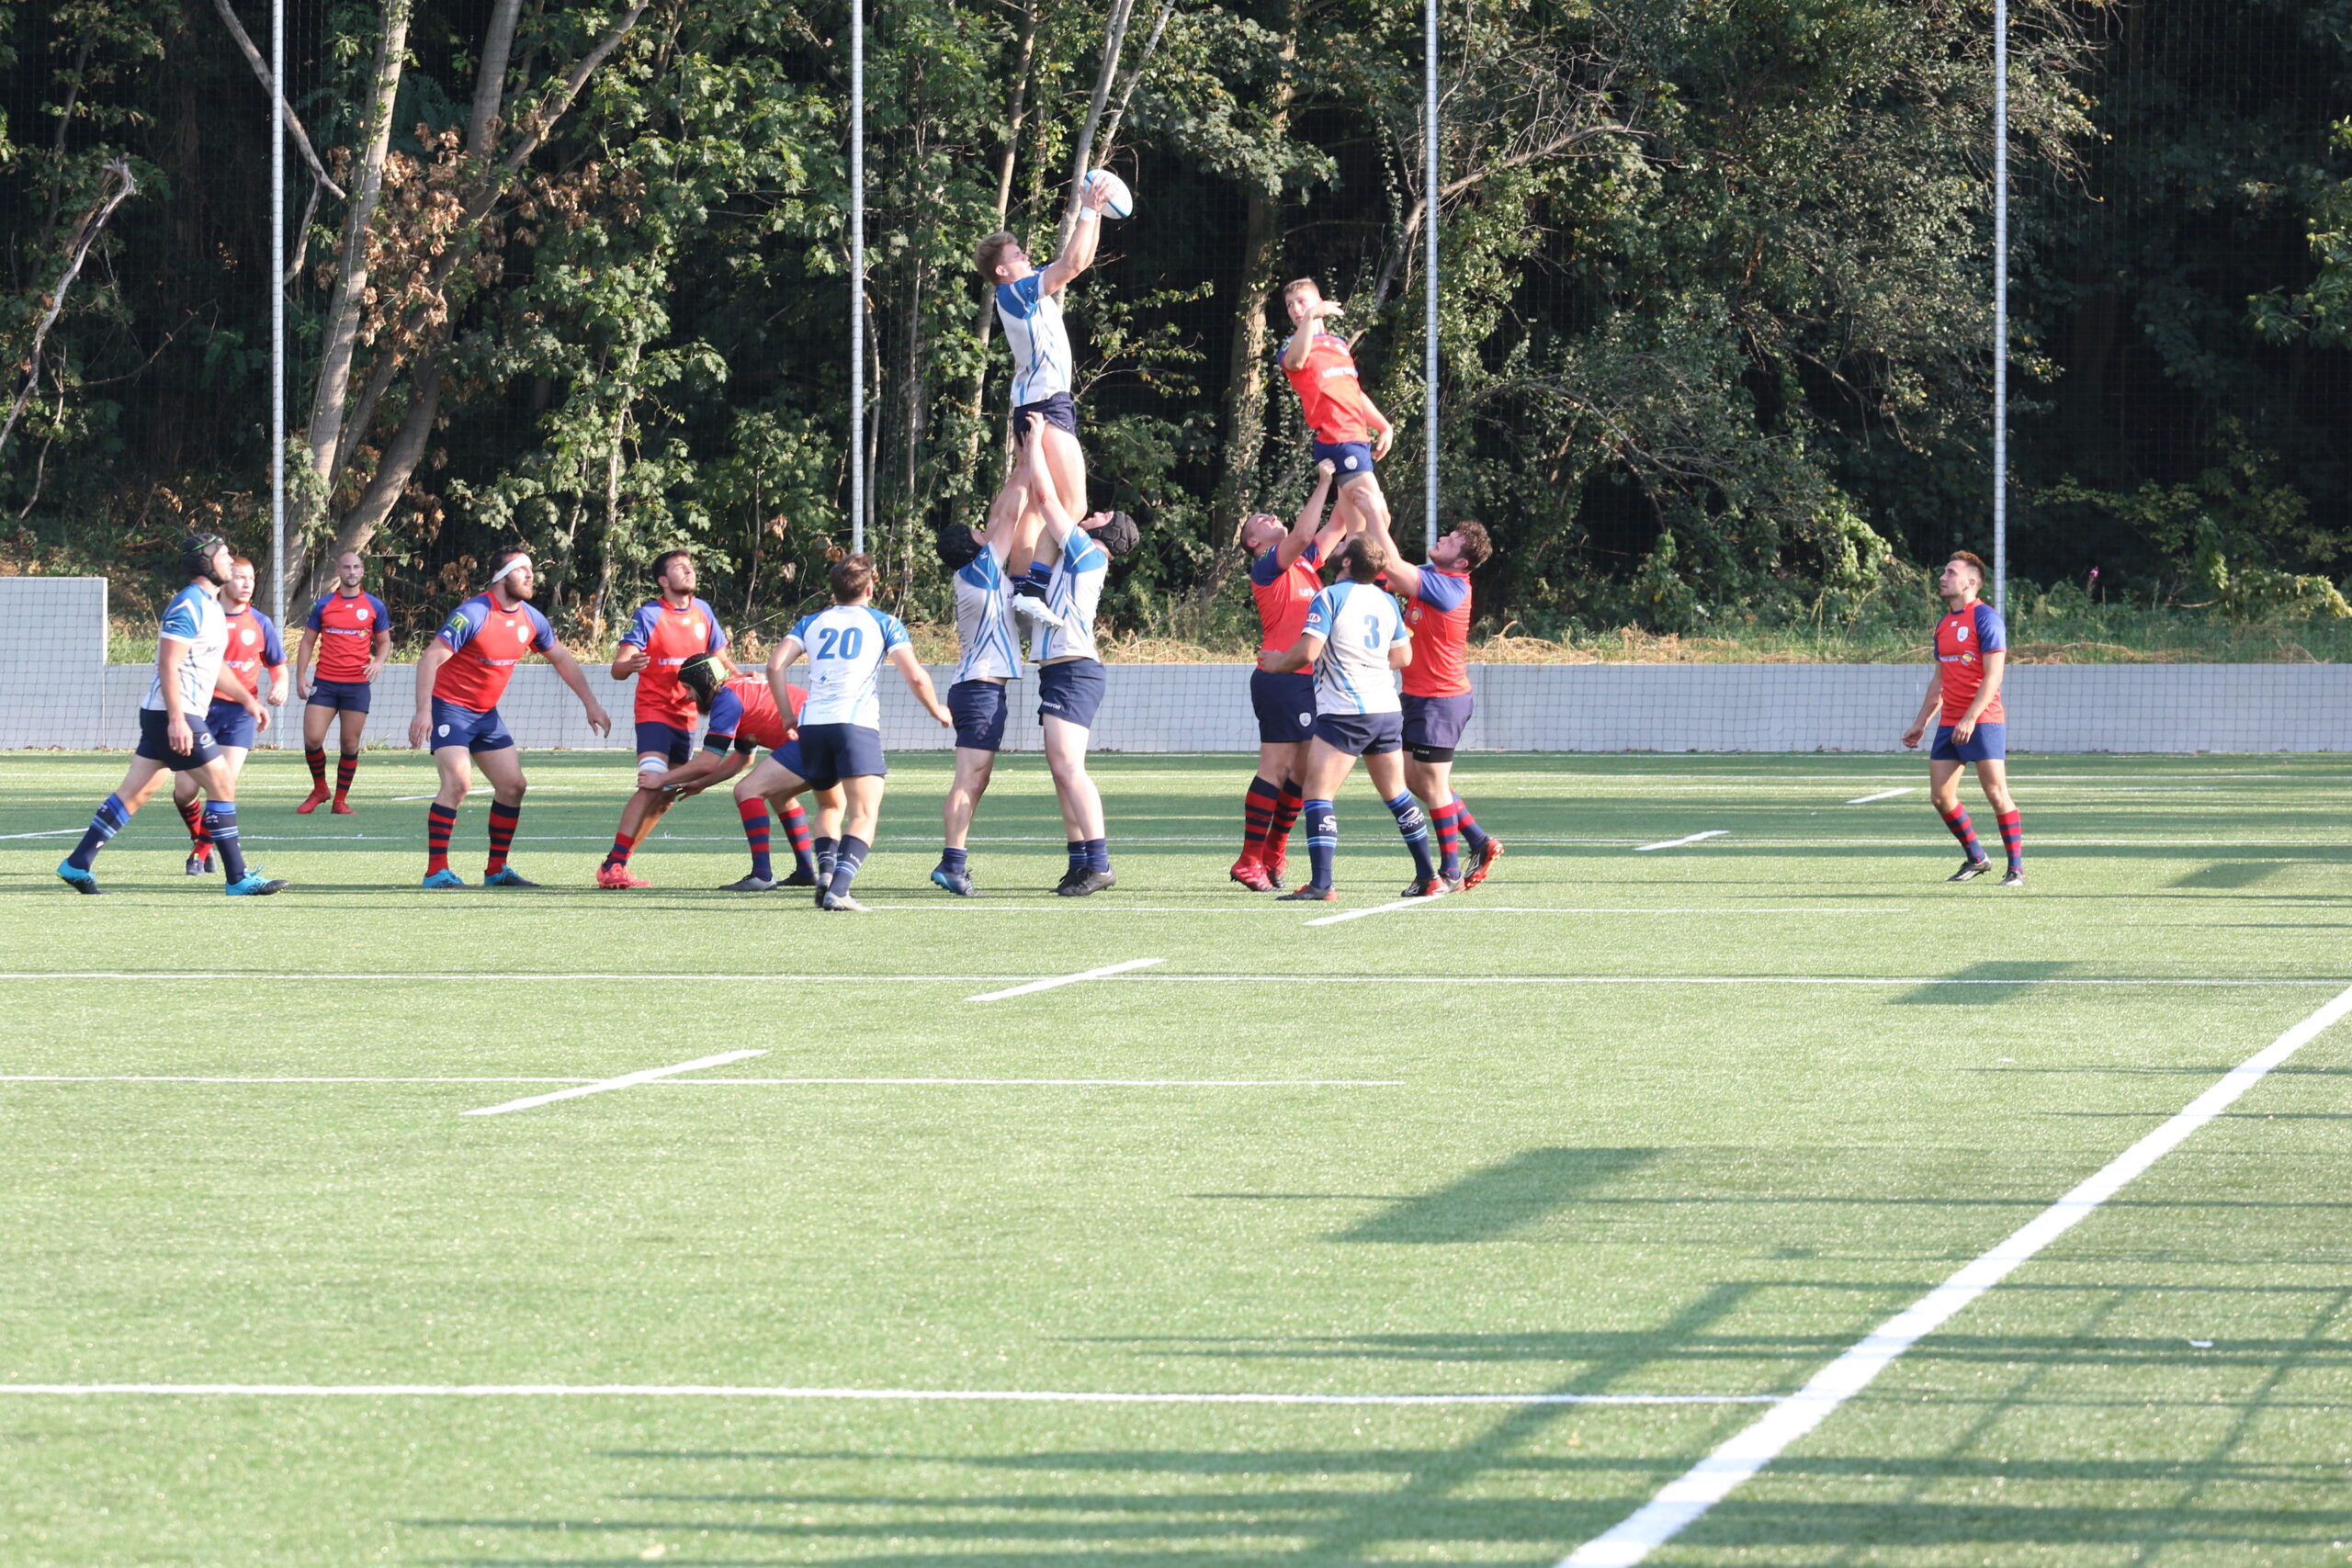 Rugby Club Leuven opent nieuw veld op familiedag